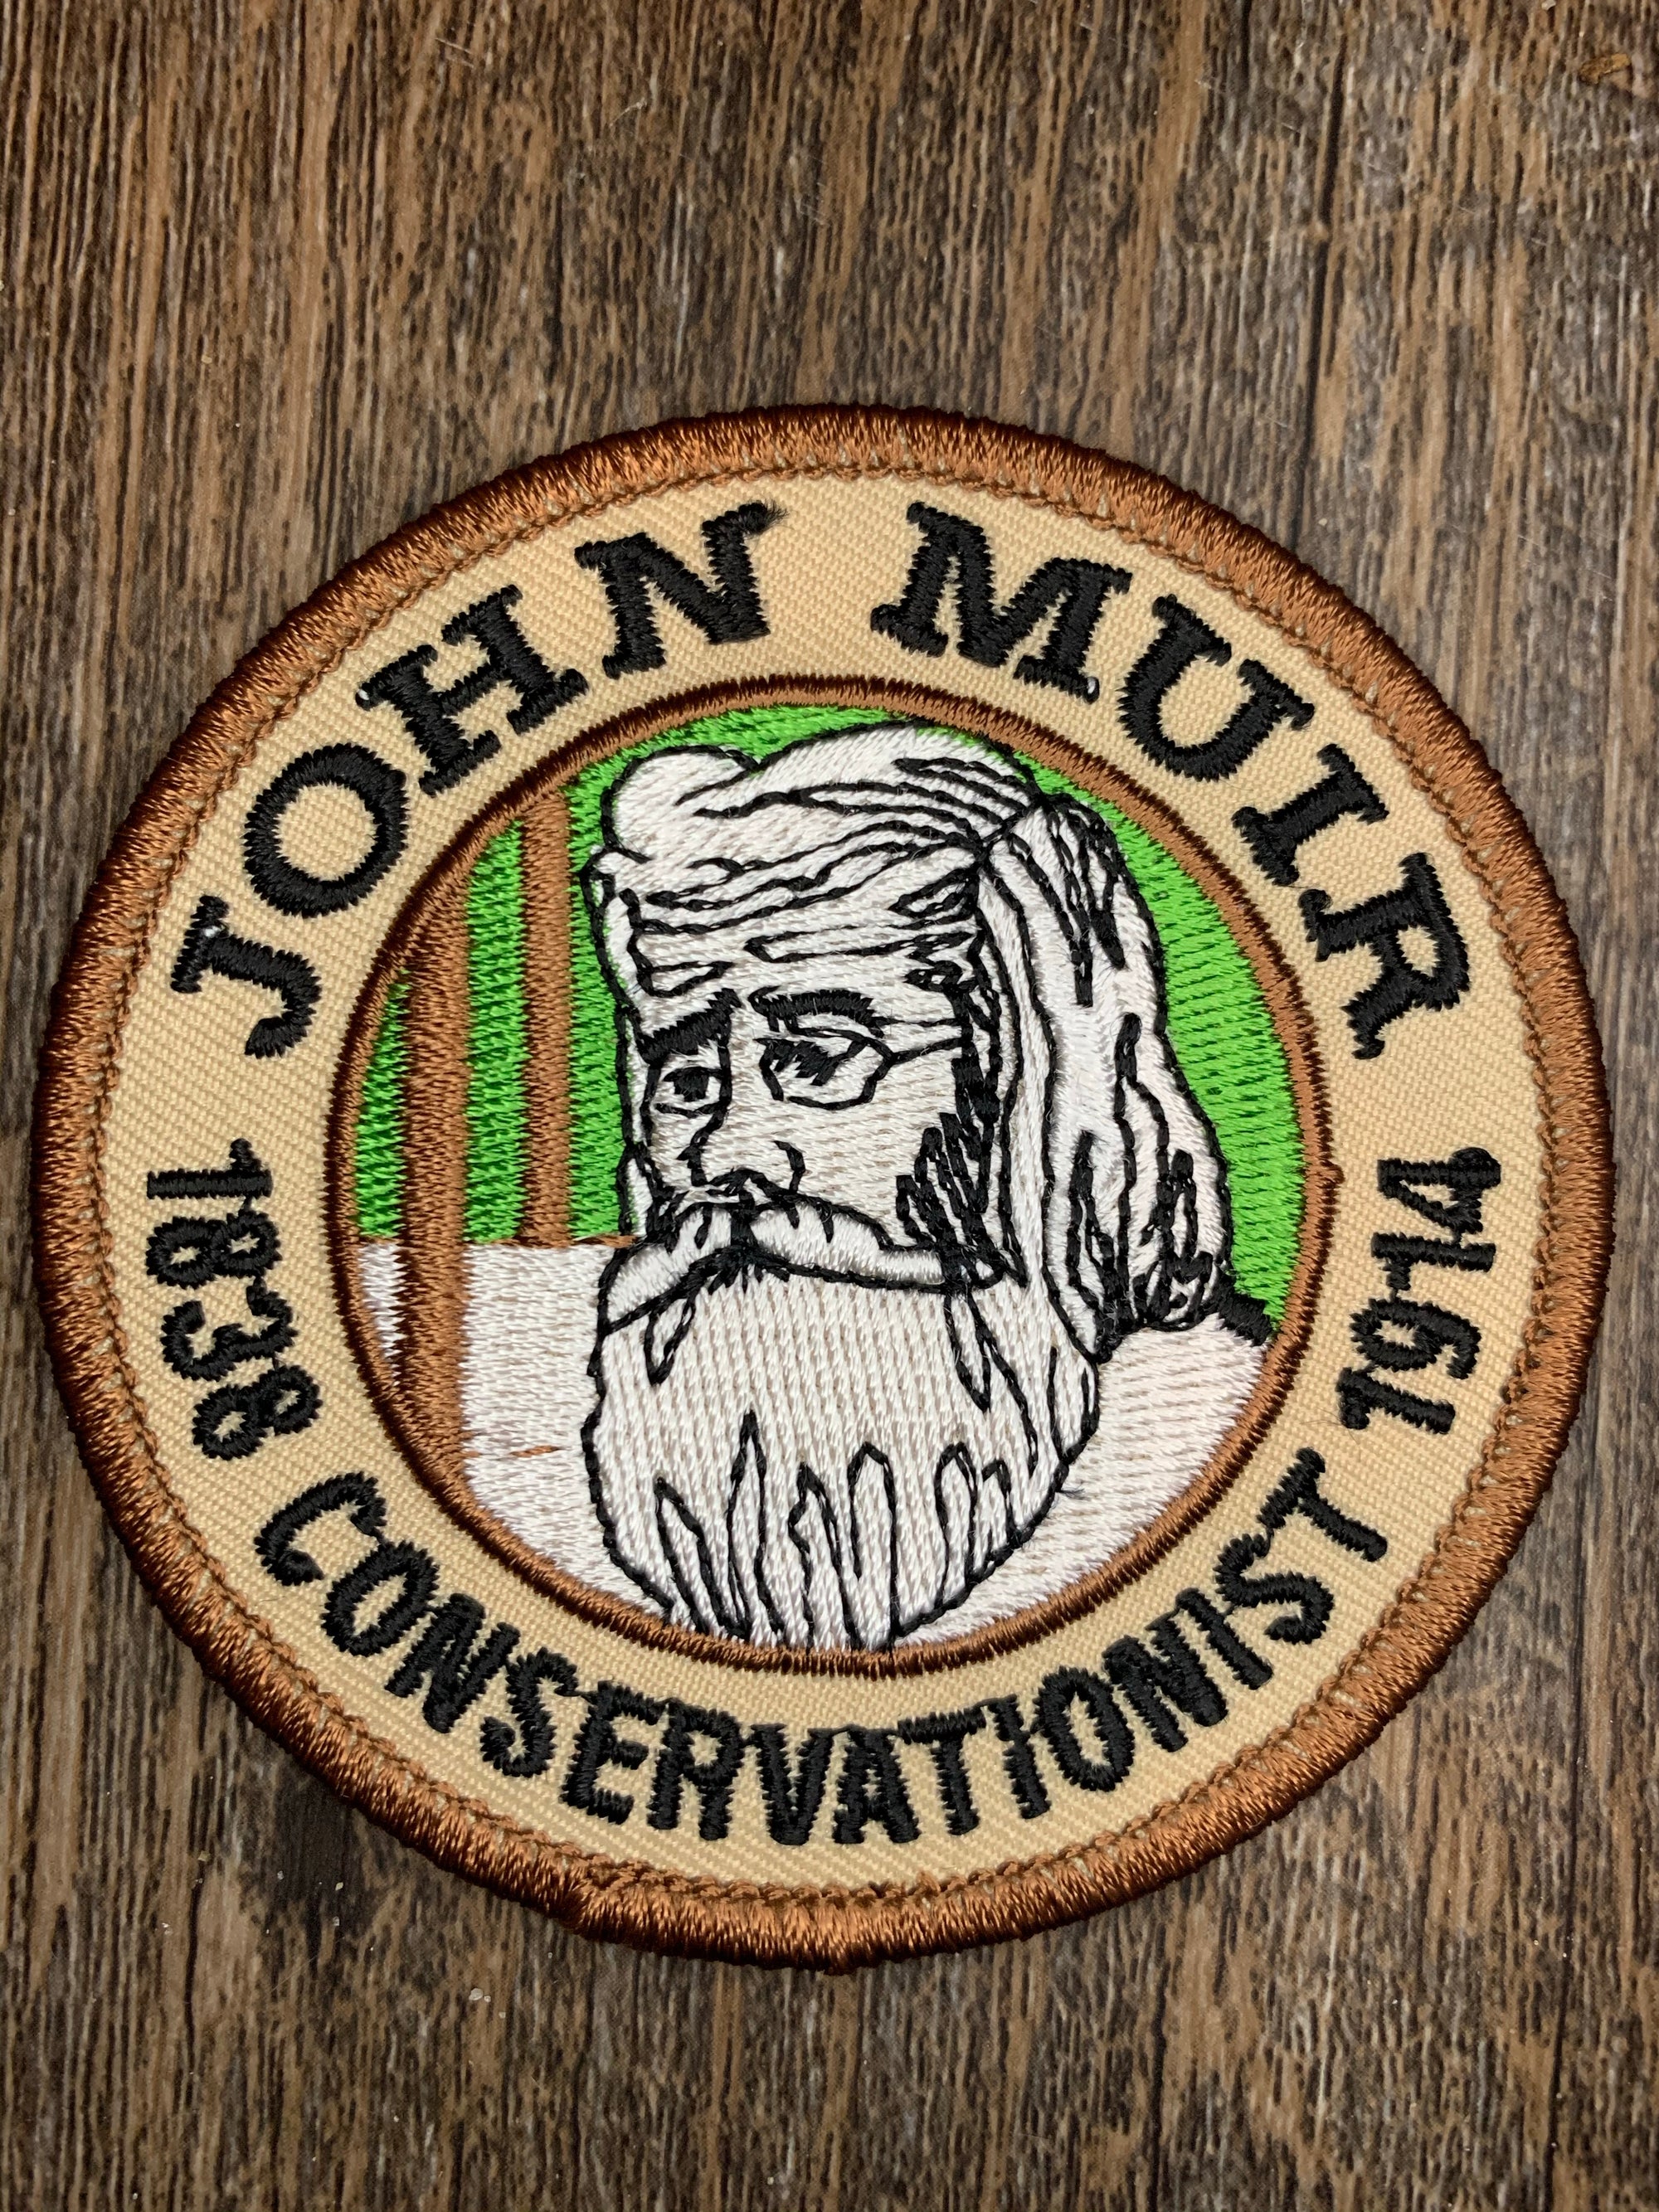 John Muir Conservationist